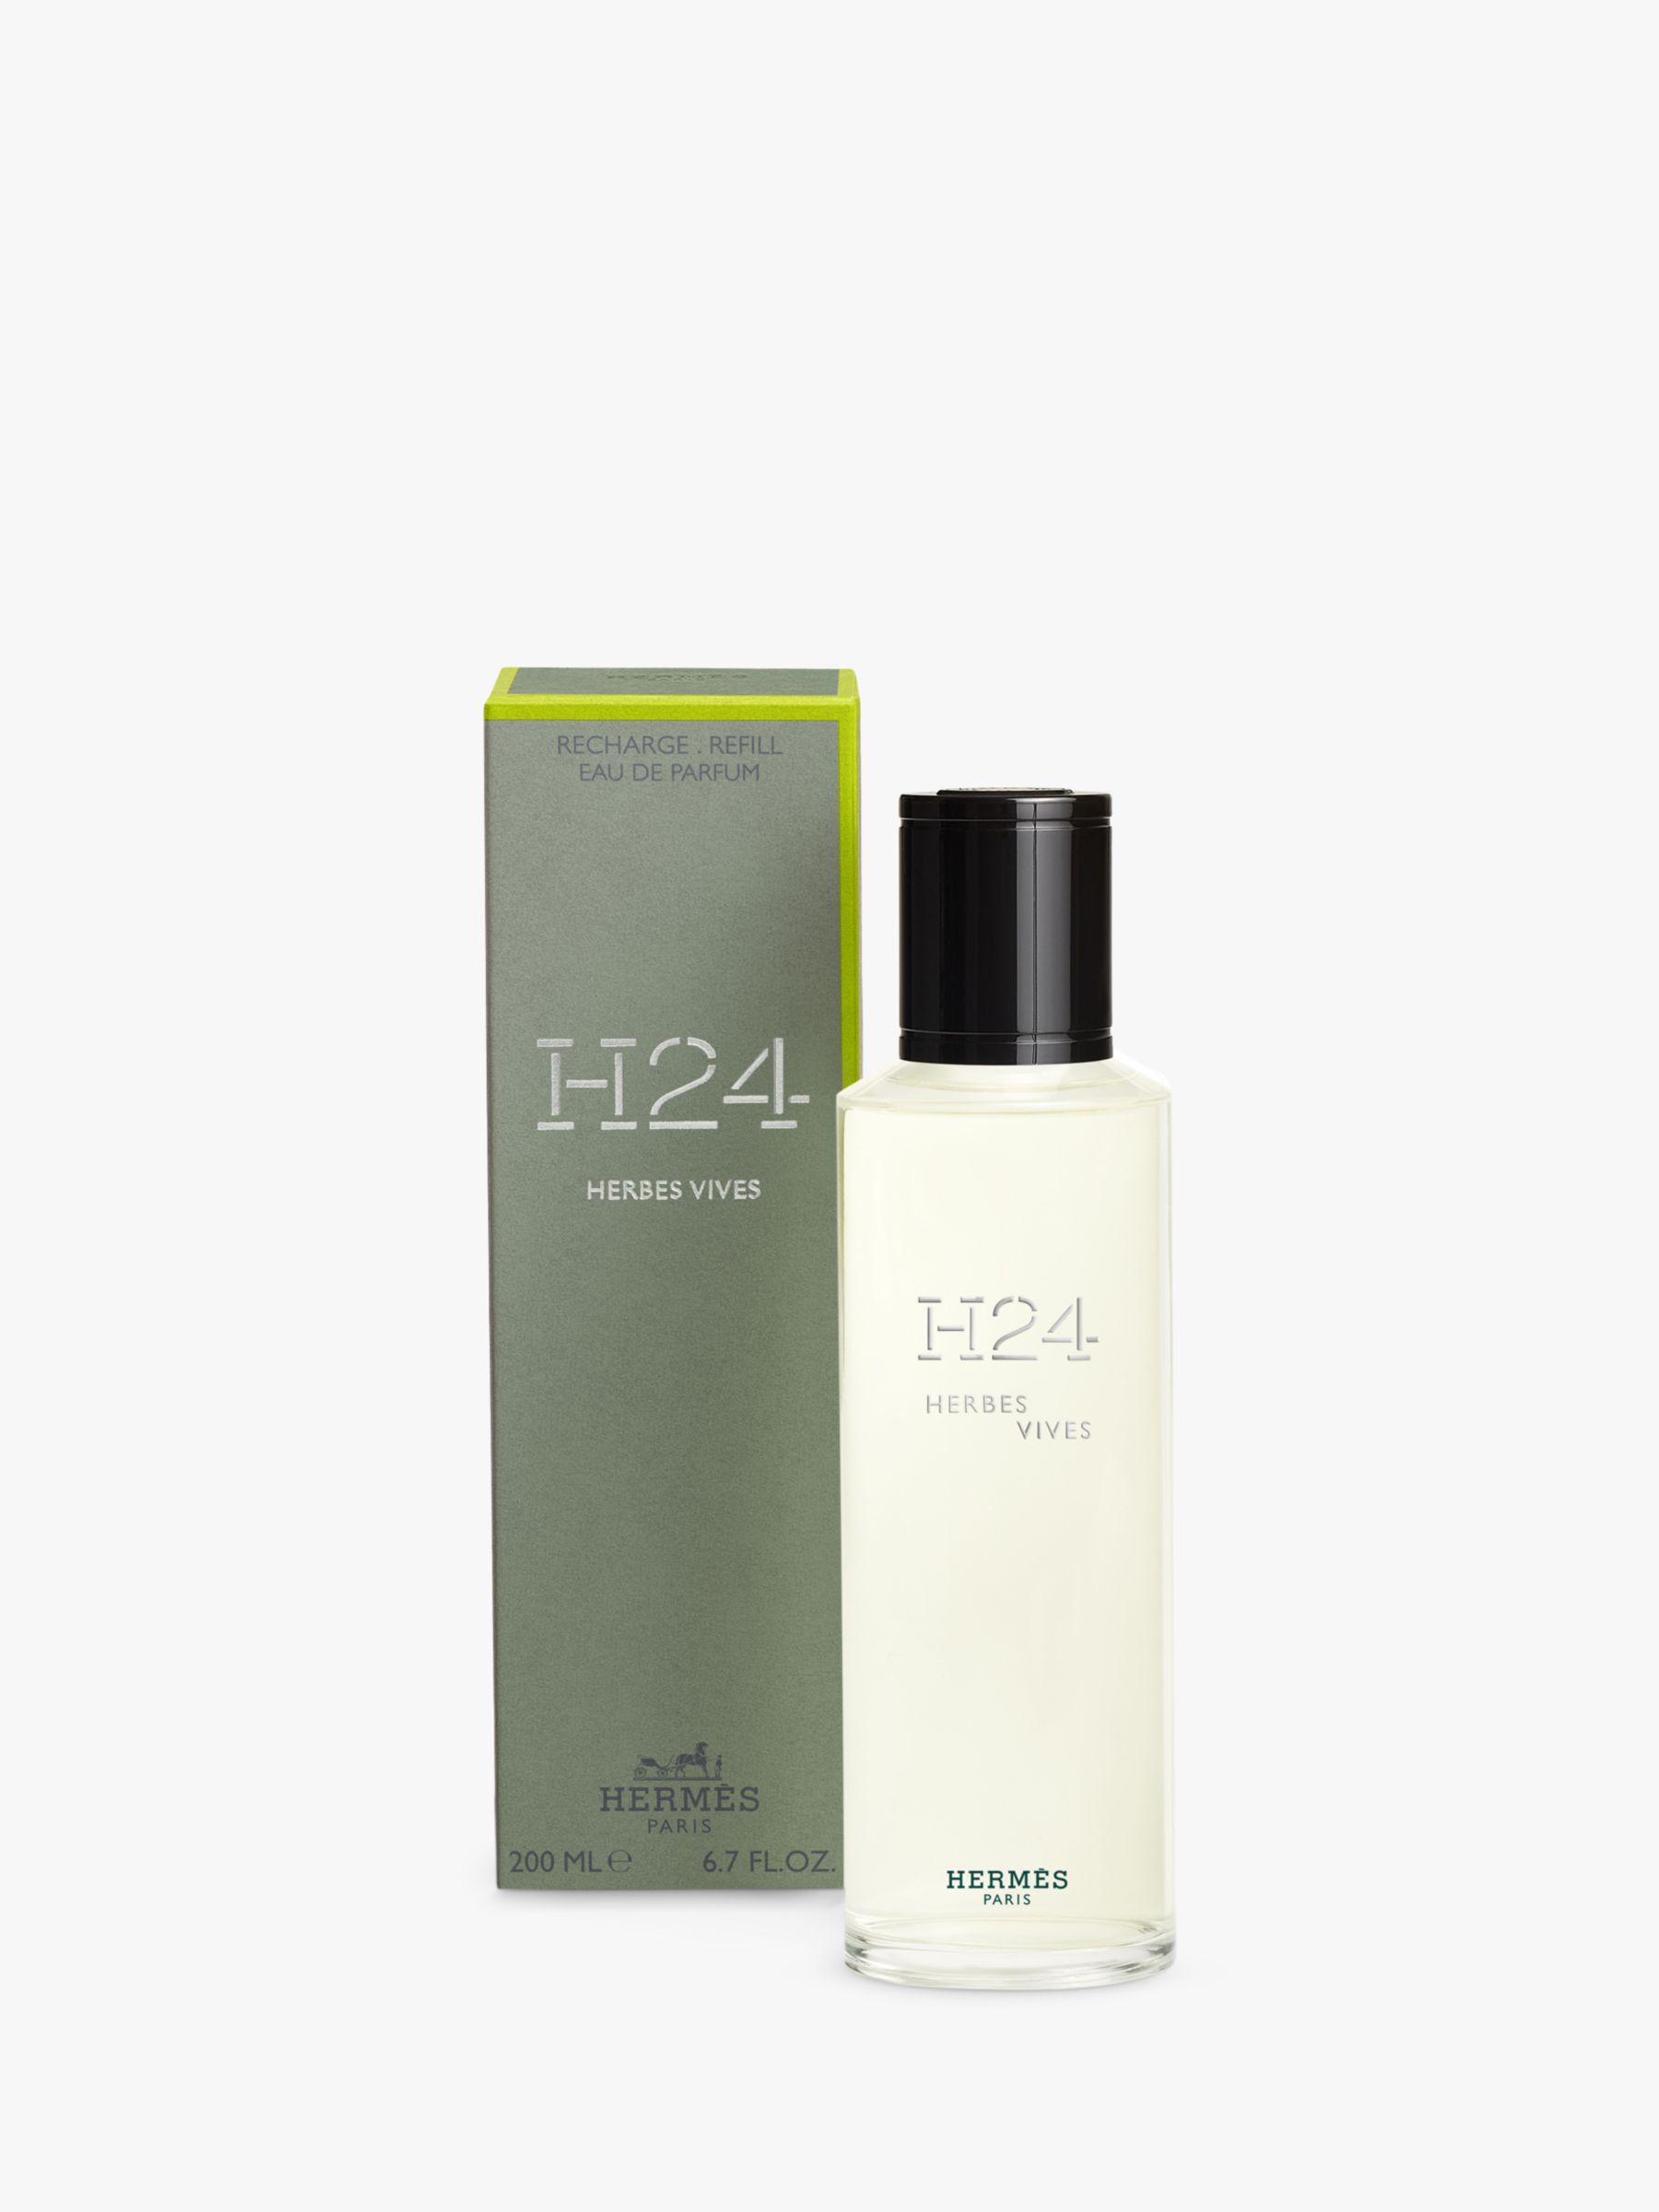 Hermès H24 Herbes Vives Eau de Parfum Refill, 200ml 2